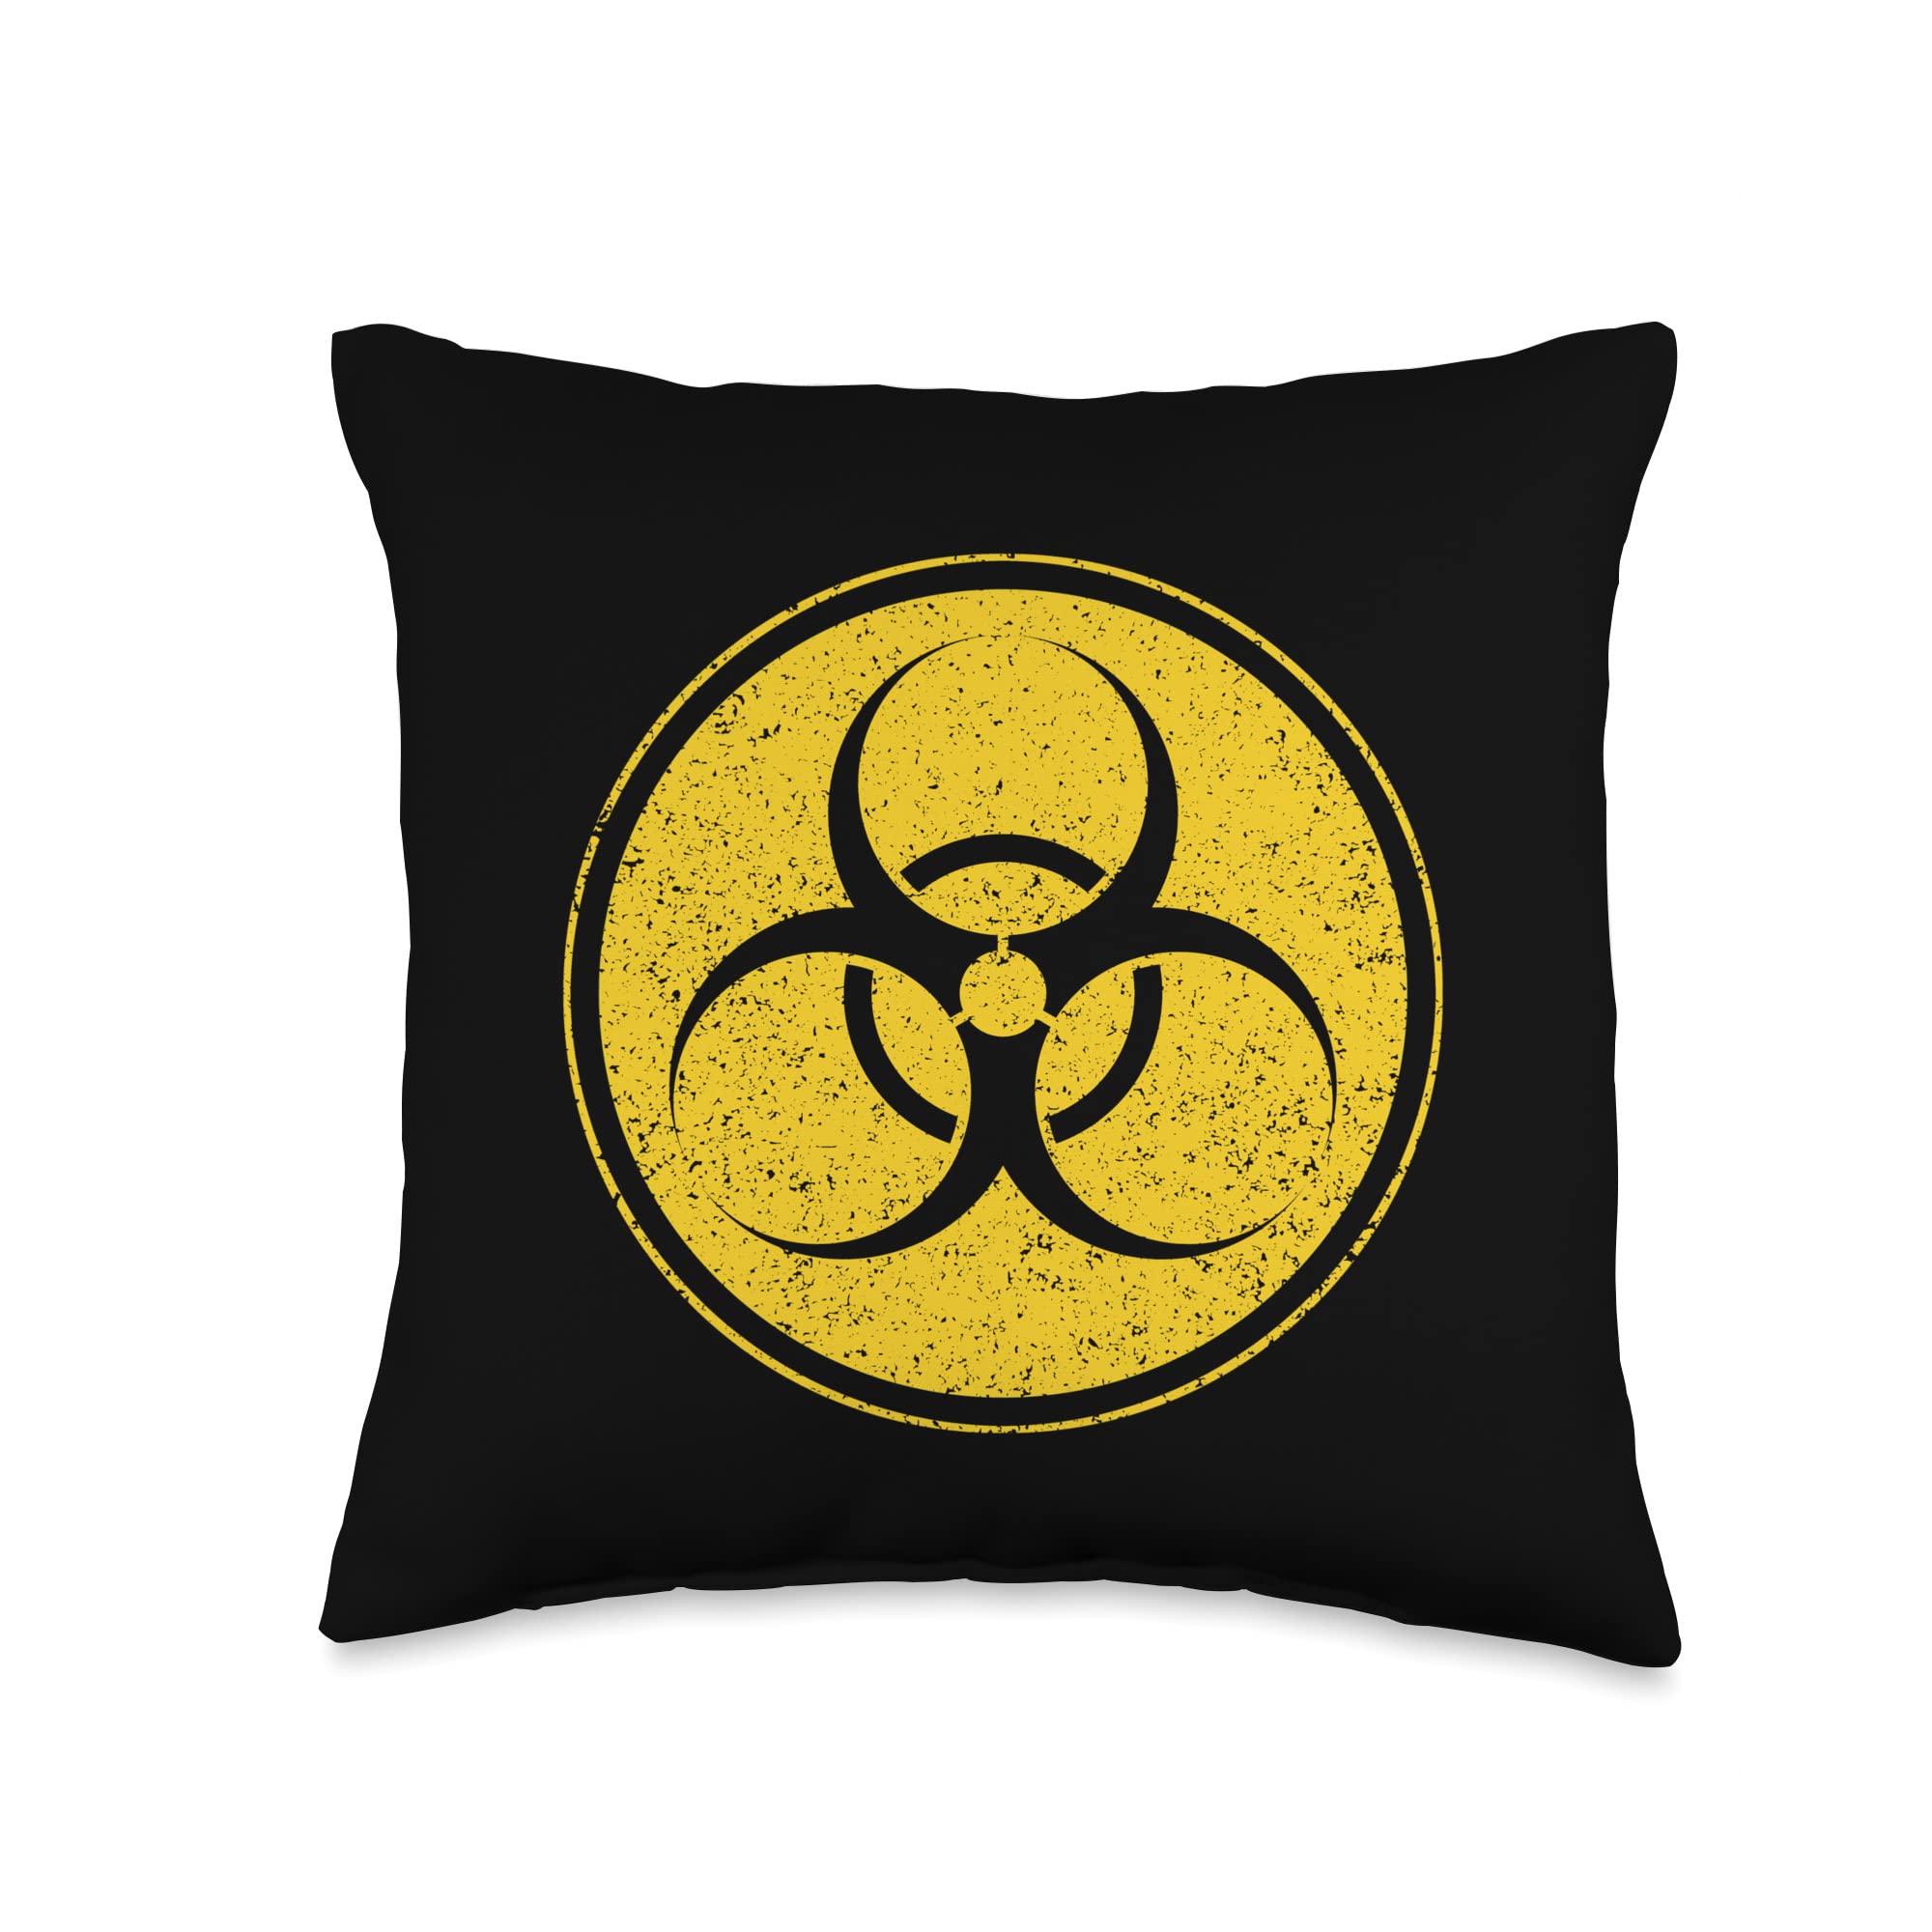 Warning sign or virus symbol